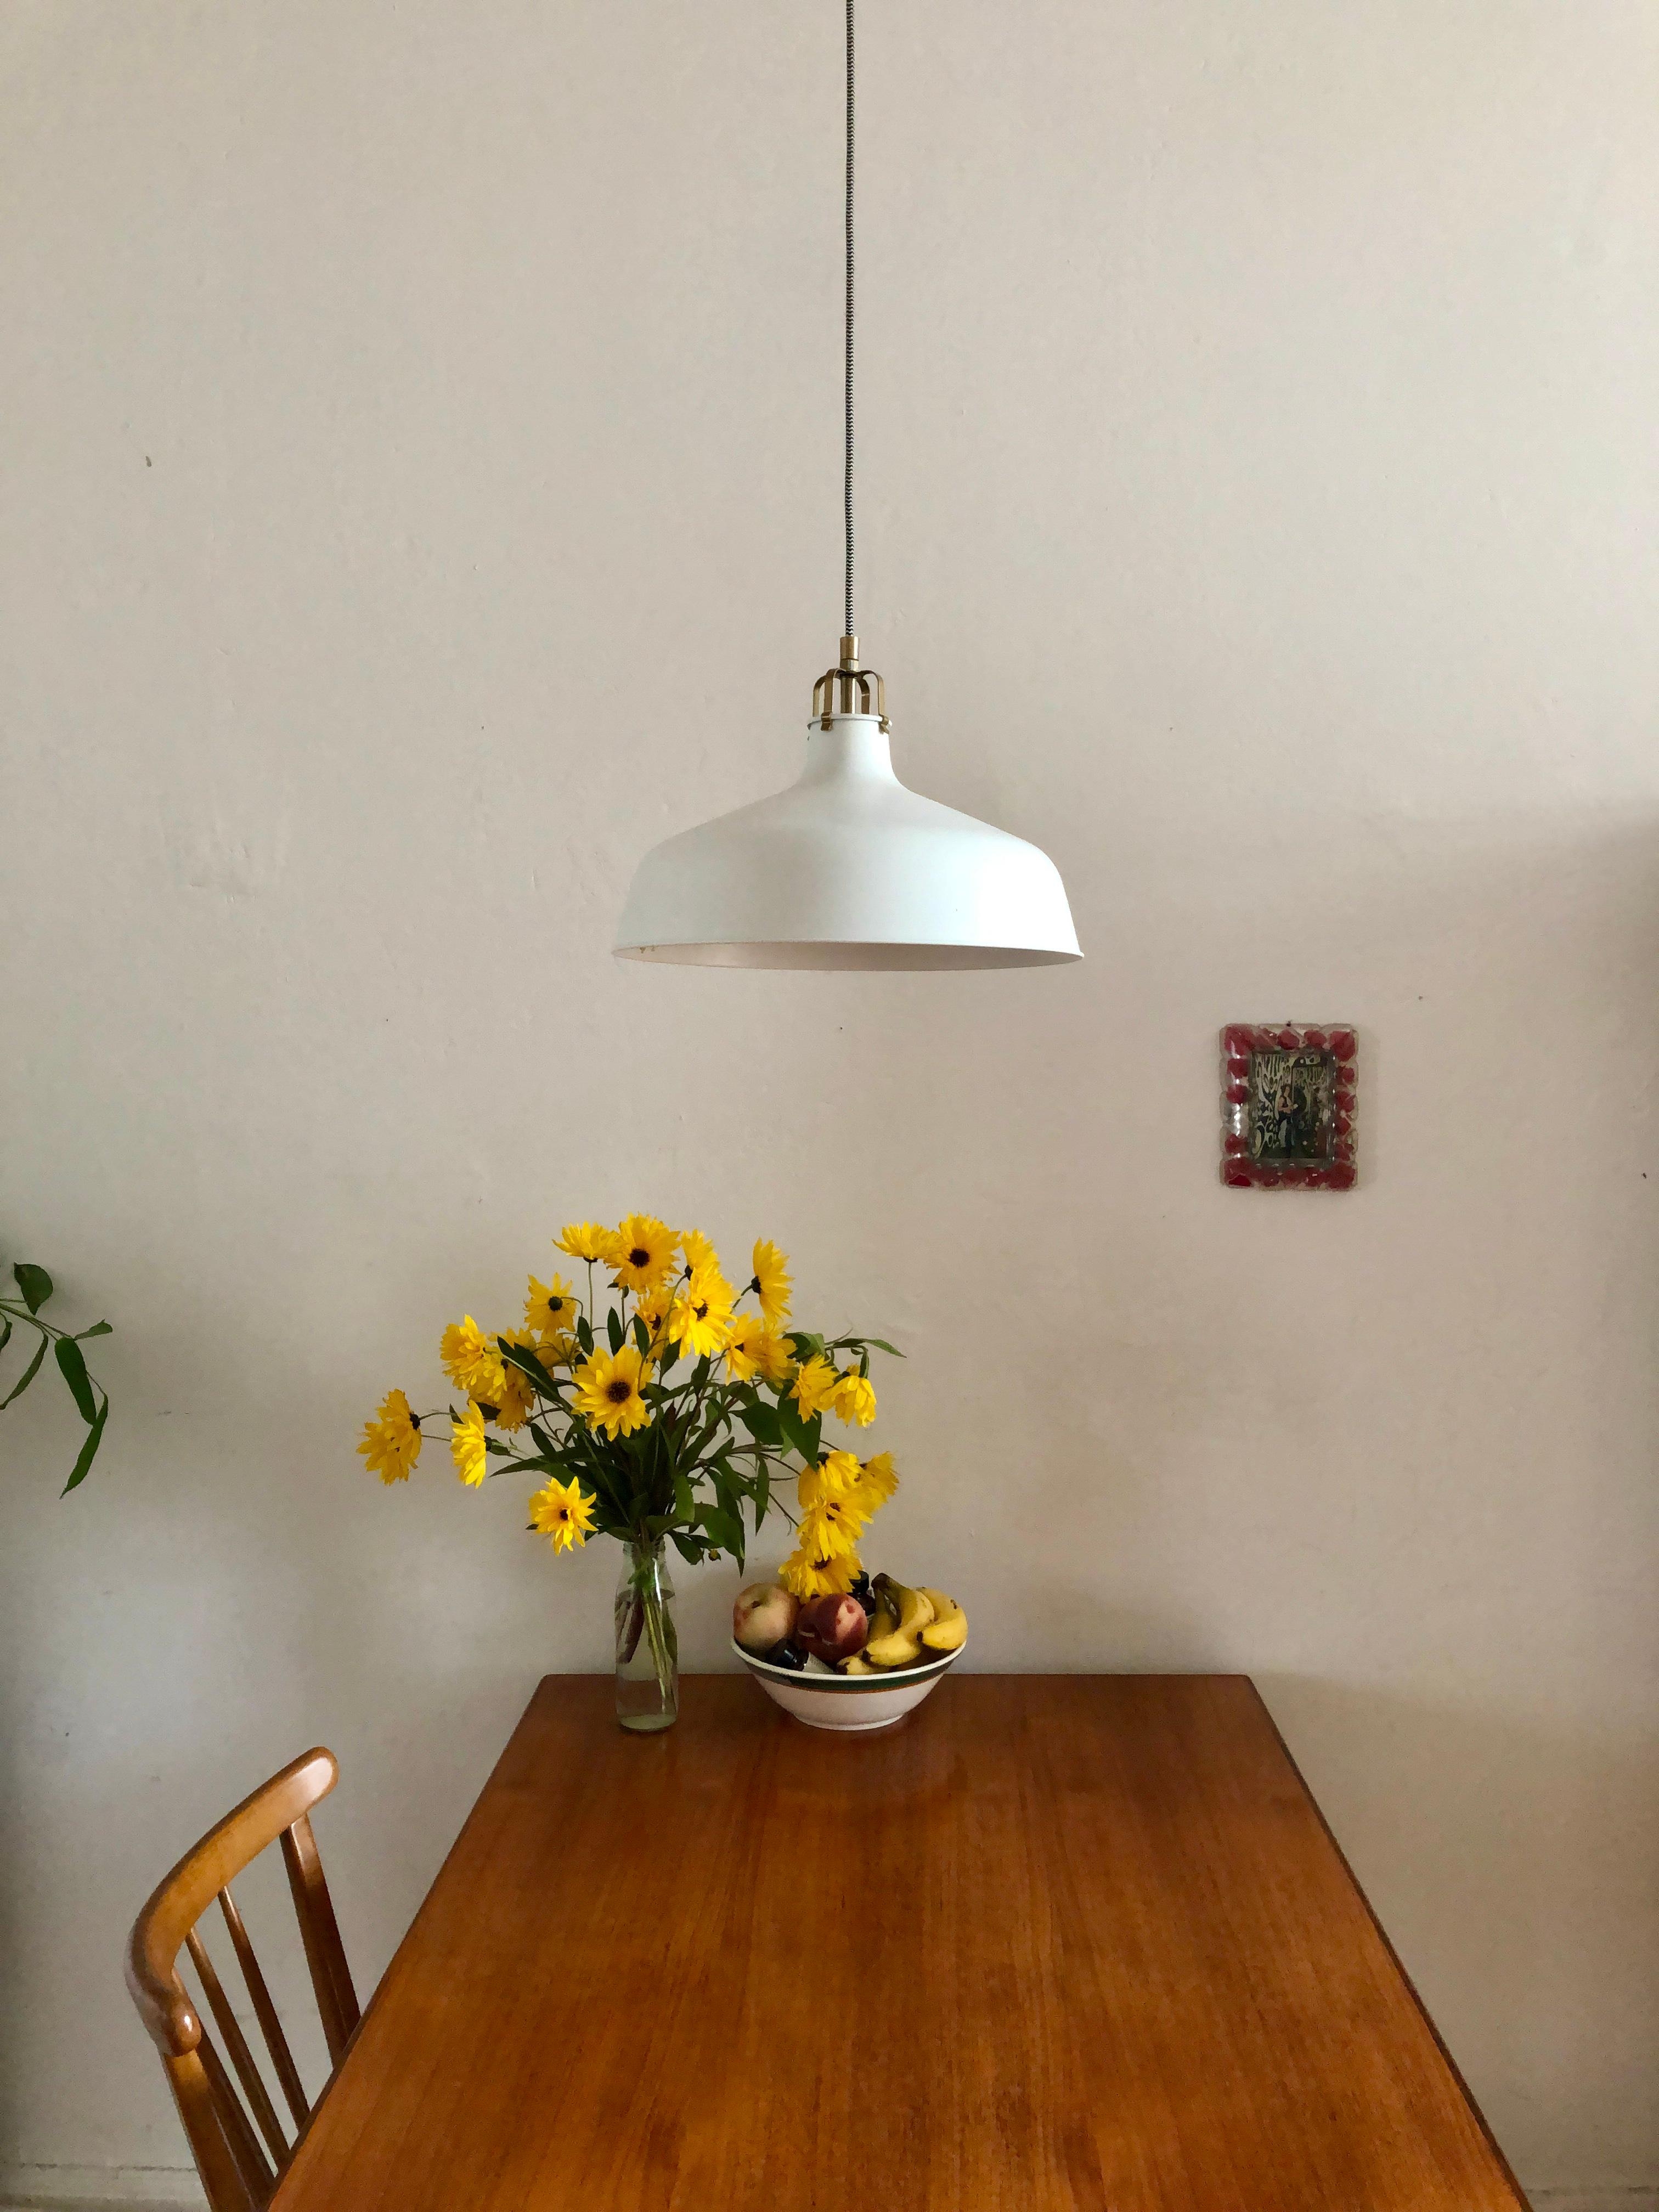 Der Tisch ist nicht immer so ordentlich! 

#Altbau #Küche #Vintage #Danishdesign #Skandistyle #Herbstblumen #simple